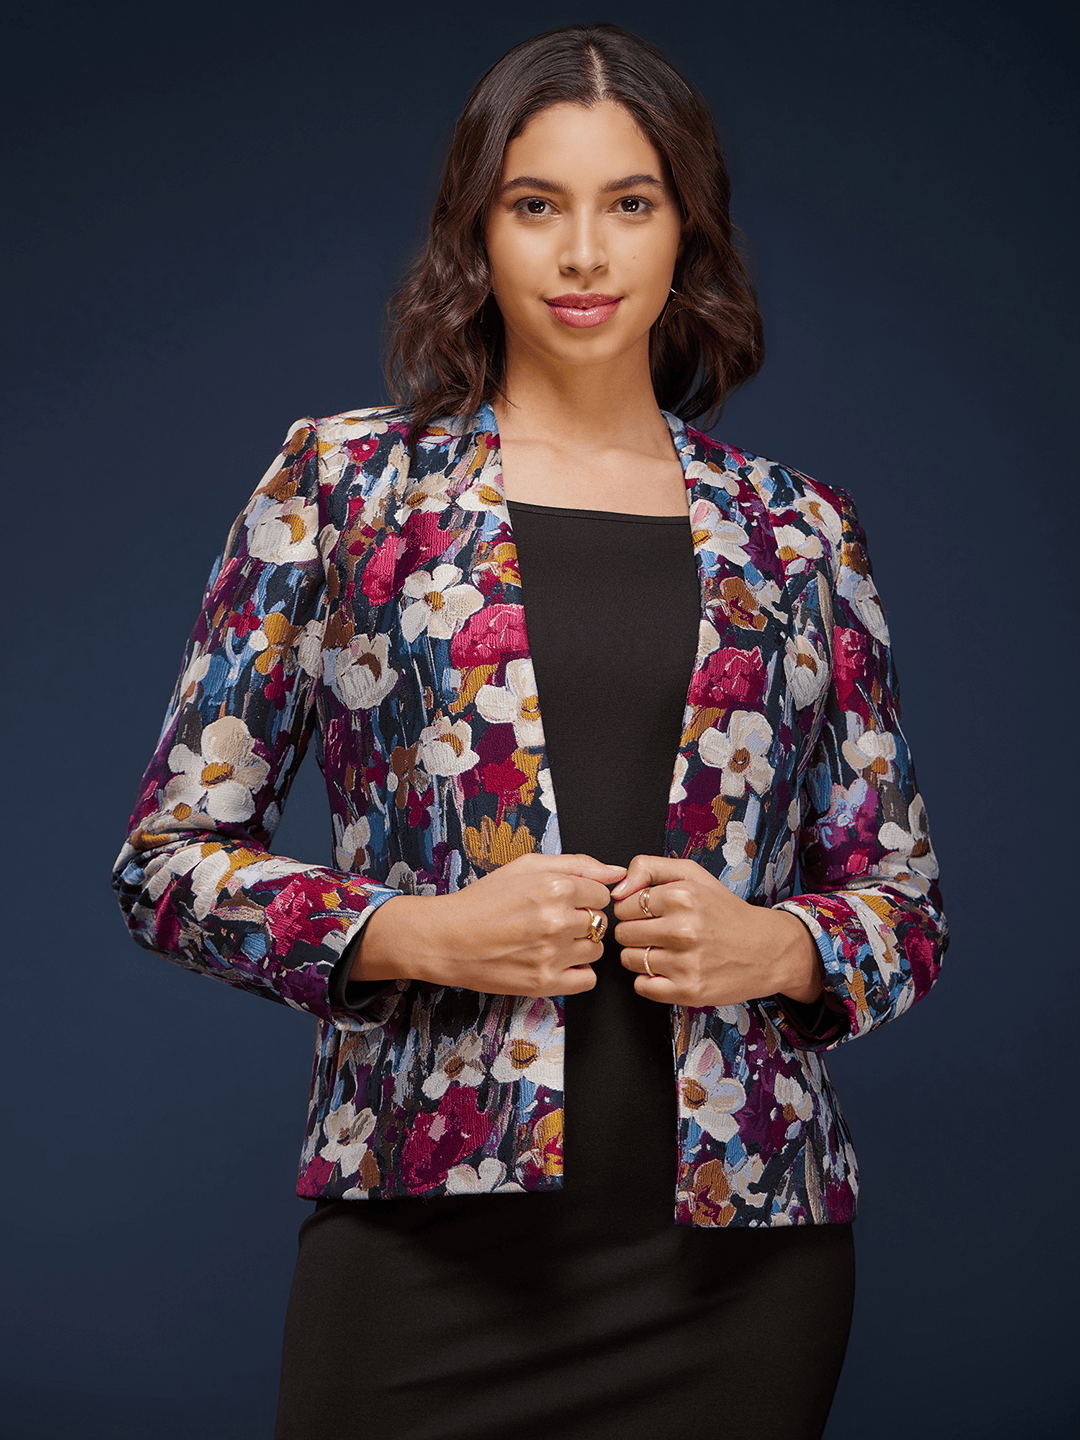 Floral Jacquard Open Front Jacket - Multicolour